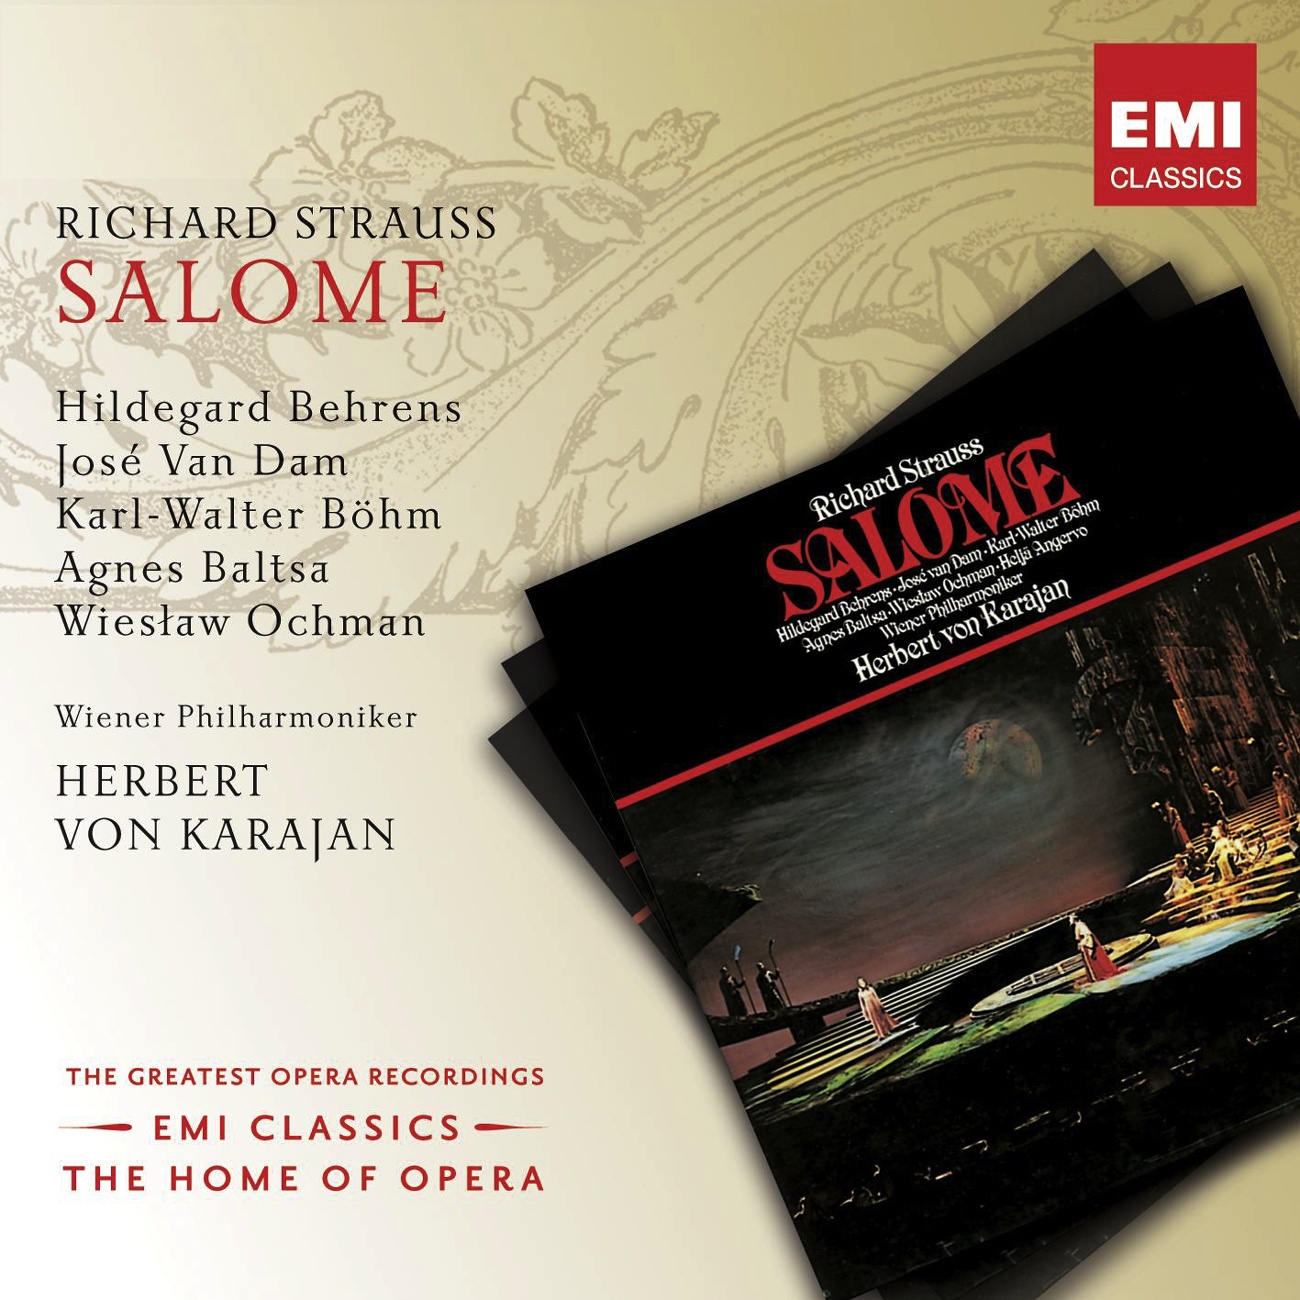 Salome (1999 Digital Remaster): Du wirst das für mich tun (Salome/Narraboth)